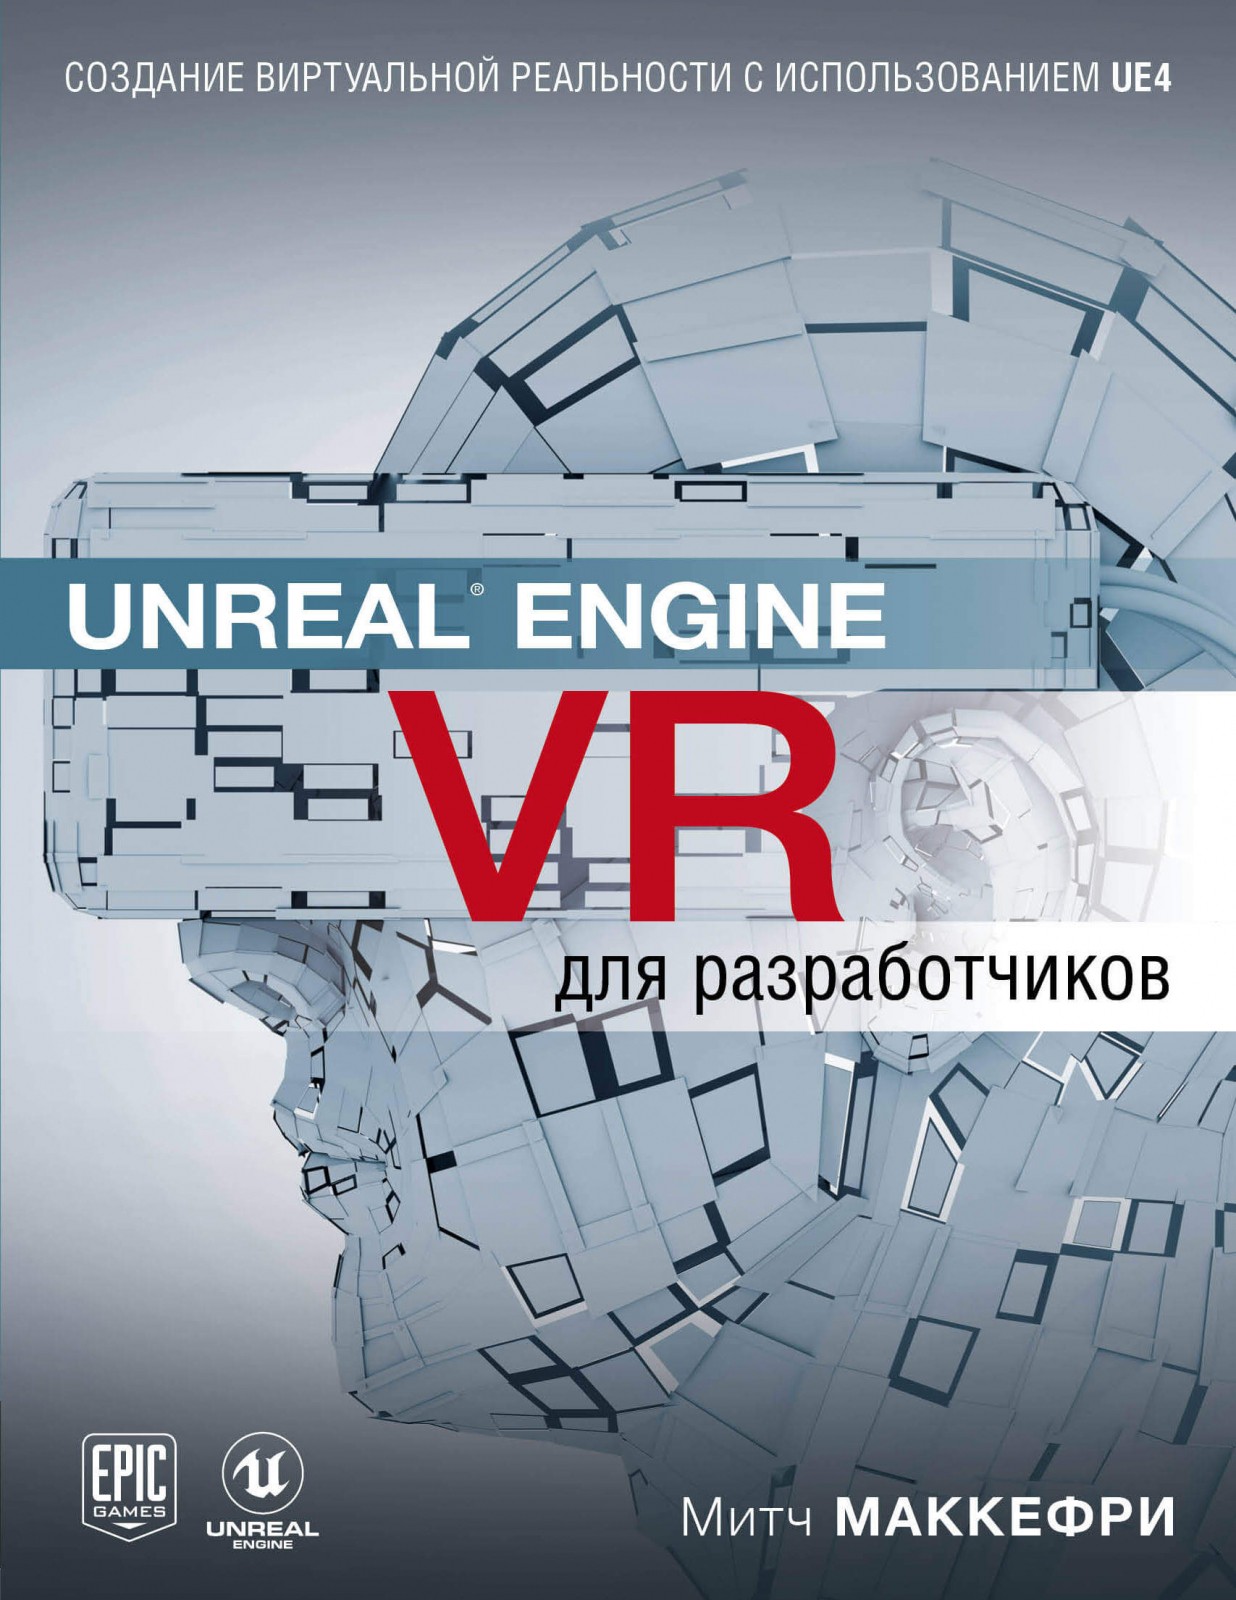 Первое руководство по созданию виртуальной реальности с использованием движка Unreal Engine 4 на русском языке